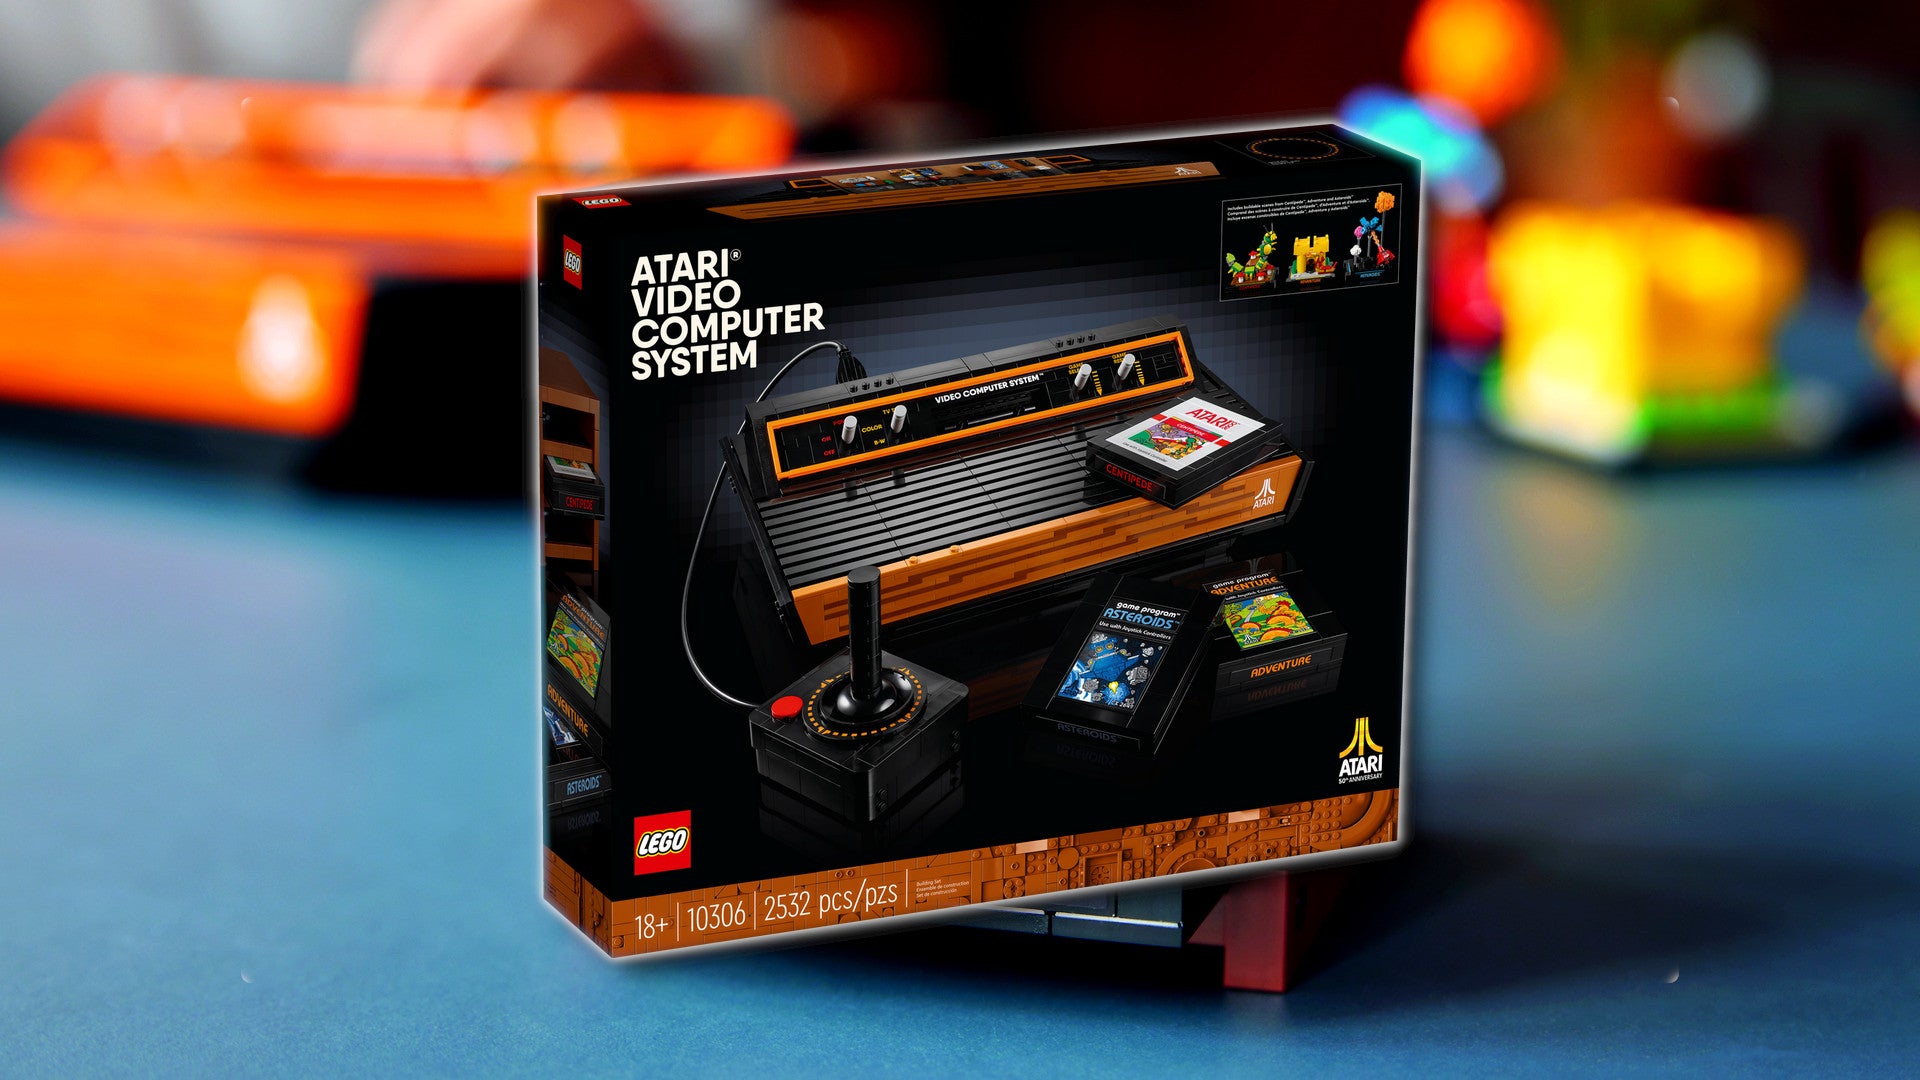 Bilder zu Lego Atari 2600: Set mit Retro-Konsole jetzt erhältlich (Update)